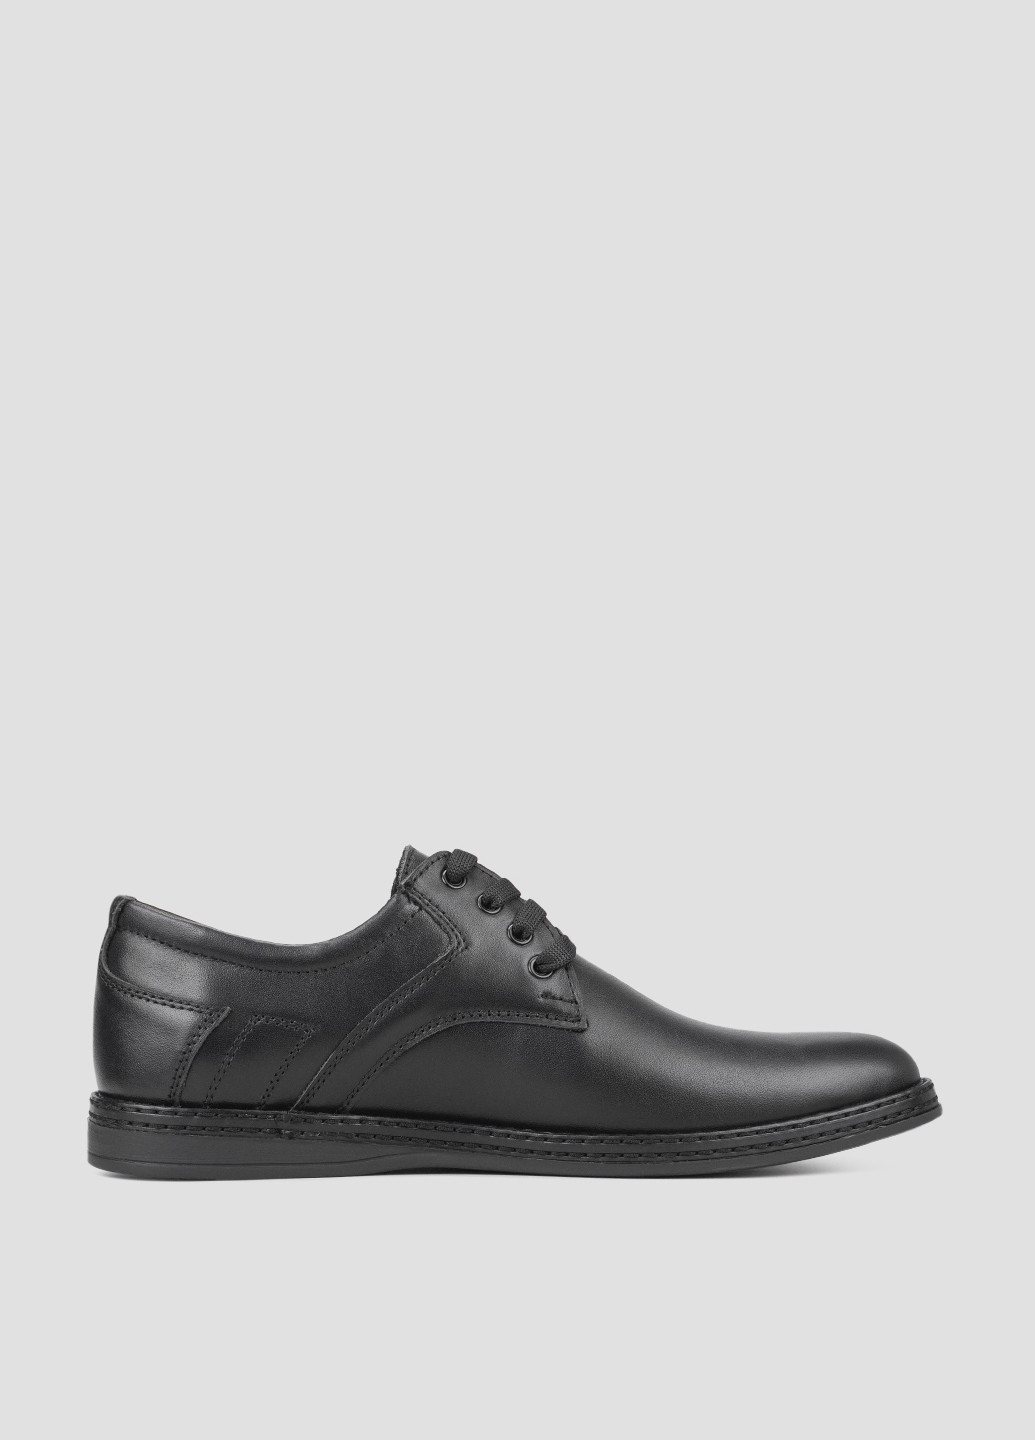 Черные классические туфли Brexton без шнурков